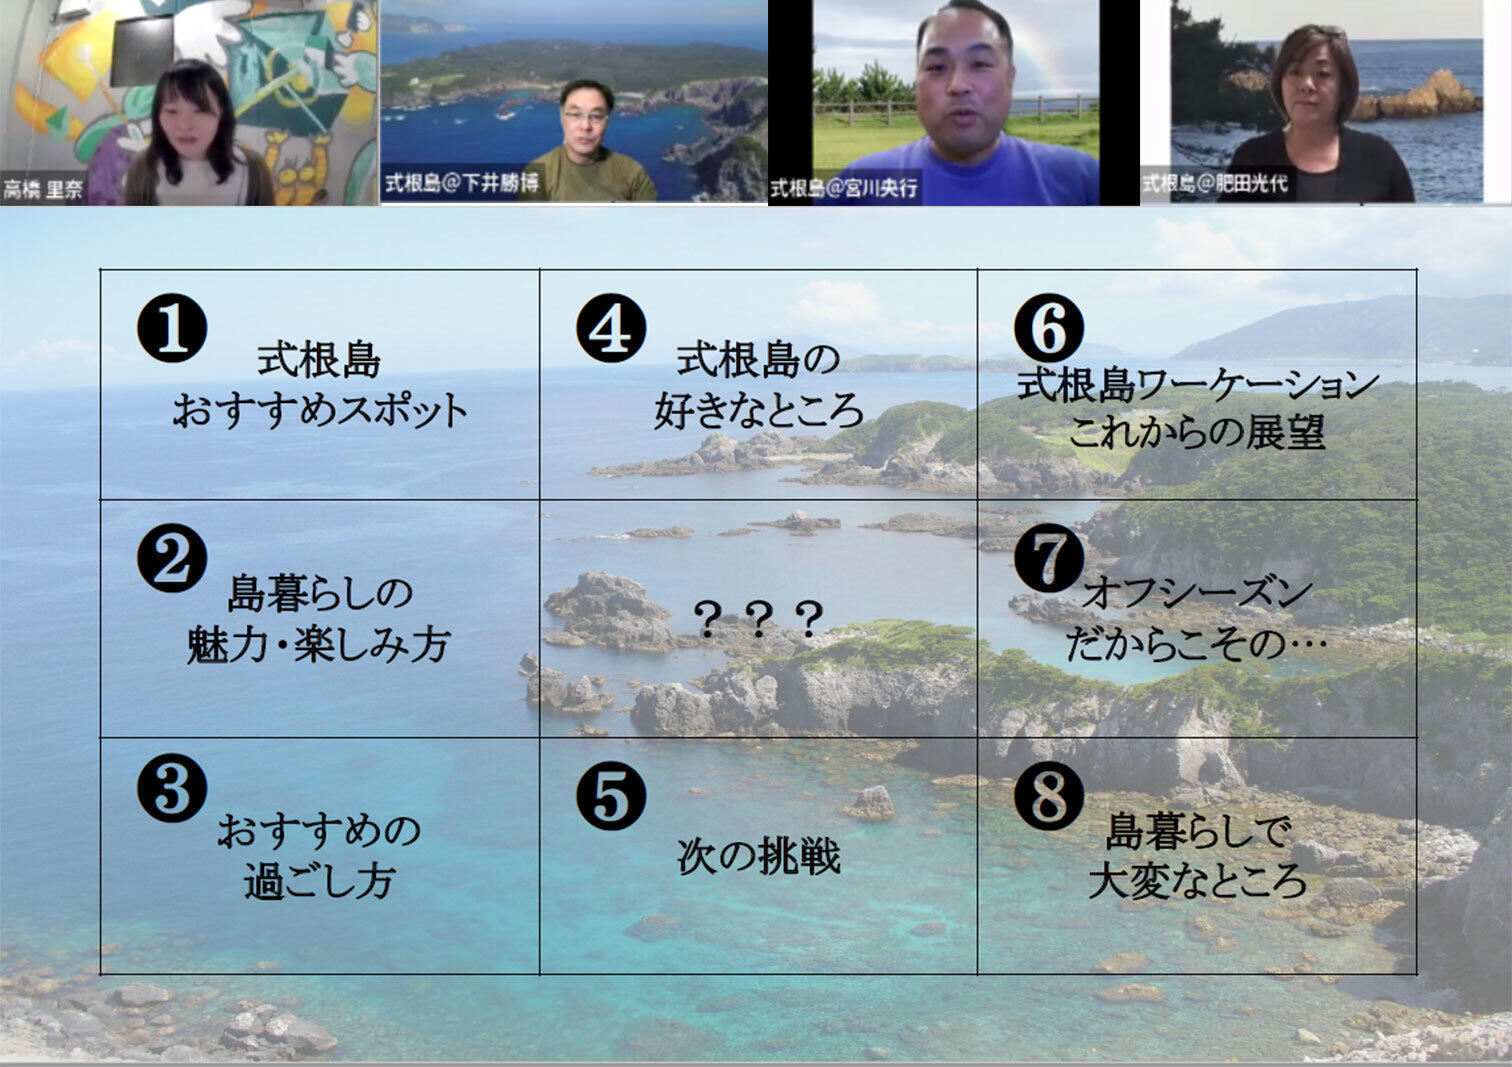 参加者からの質問に答える下井さん（左から2番目）、宮川さん（左から3番目）、肥田さん（右）